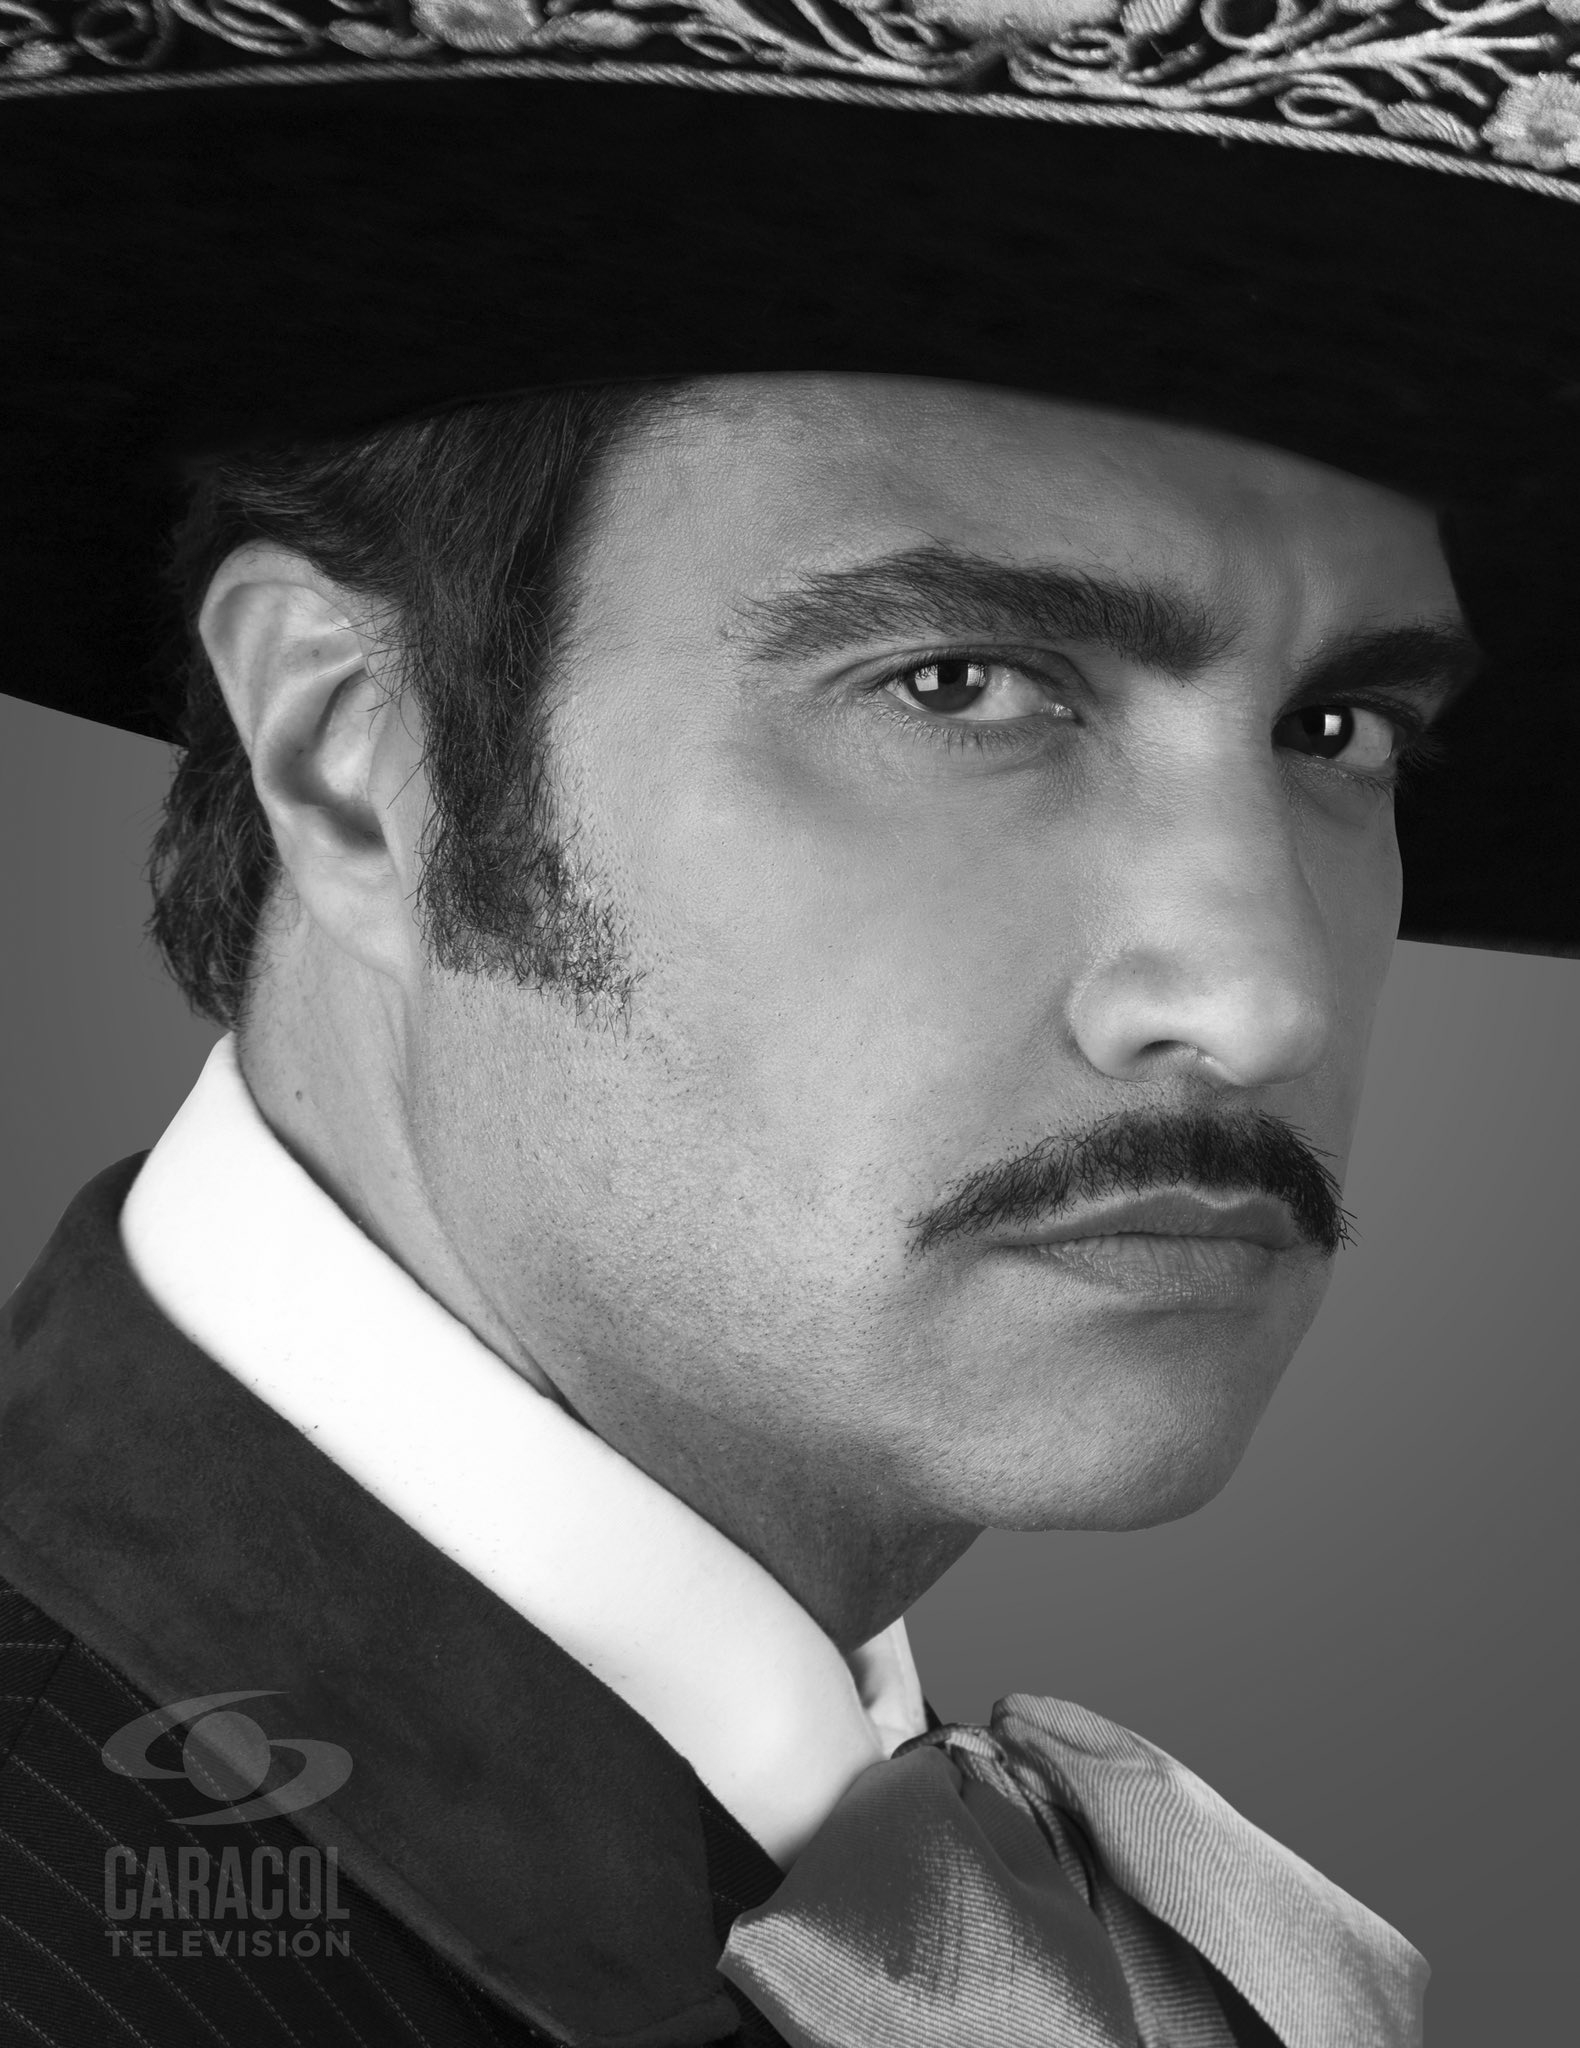 En el video se muestra al actor mexicano interpretando el tema “Ojalá que te vaya bonito”